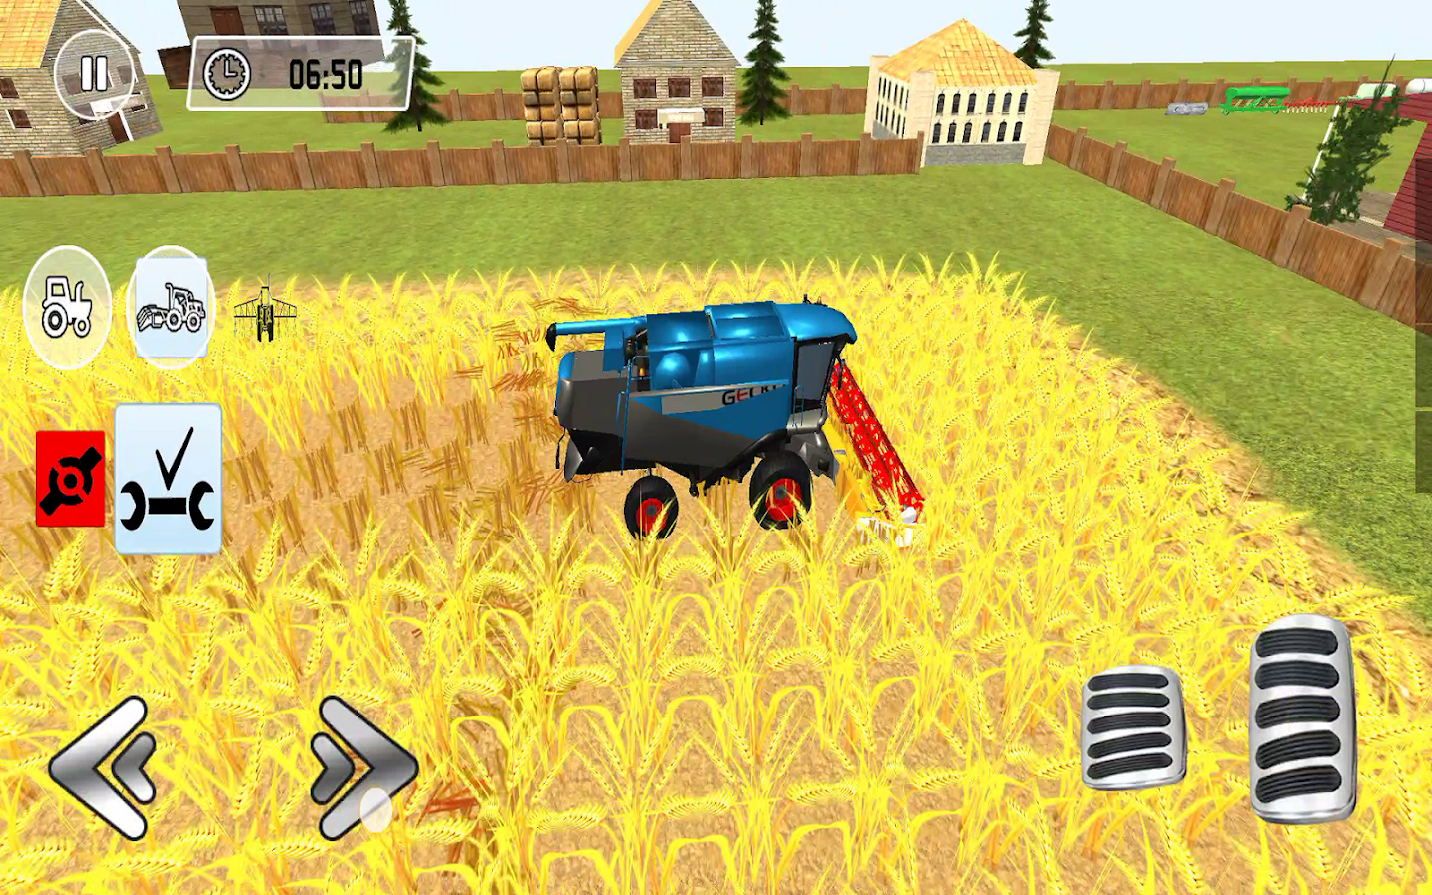 拖拉机小车农场模拟游戏v2